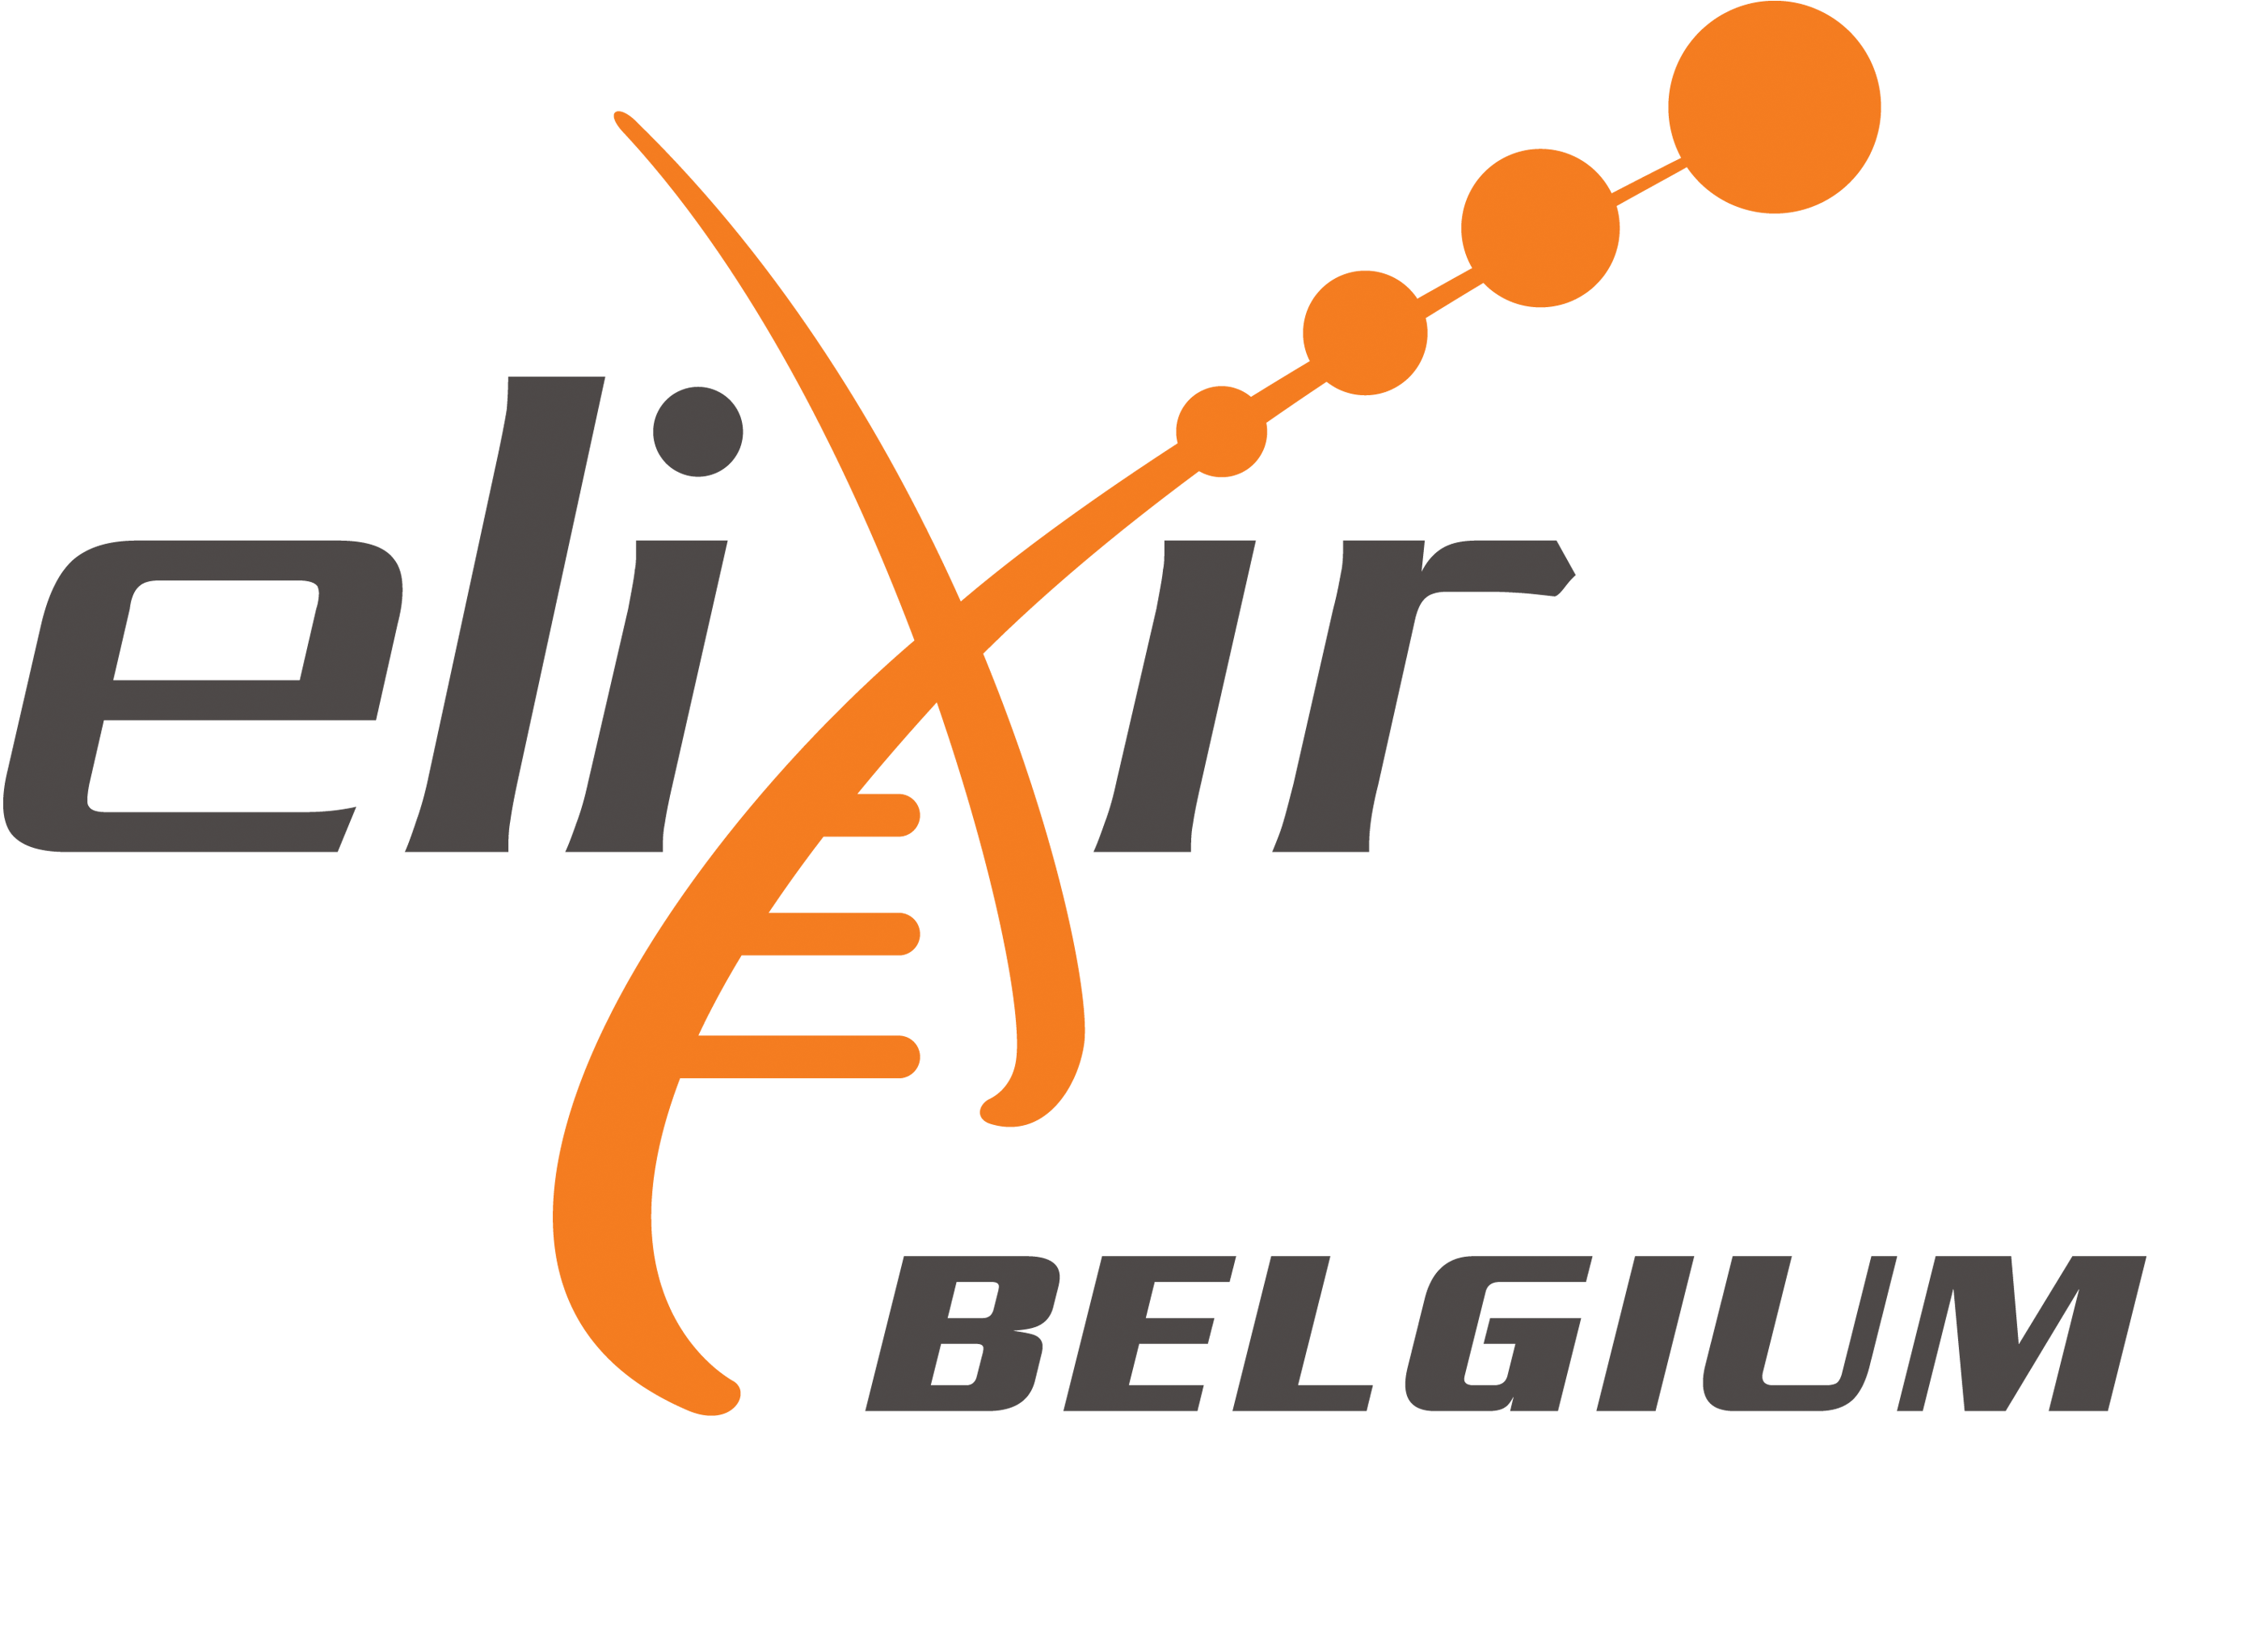 ELIXIR Belgium